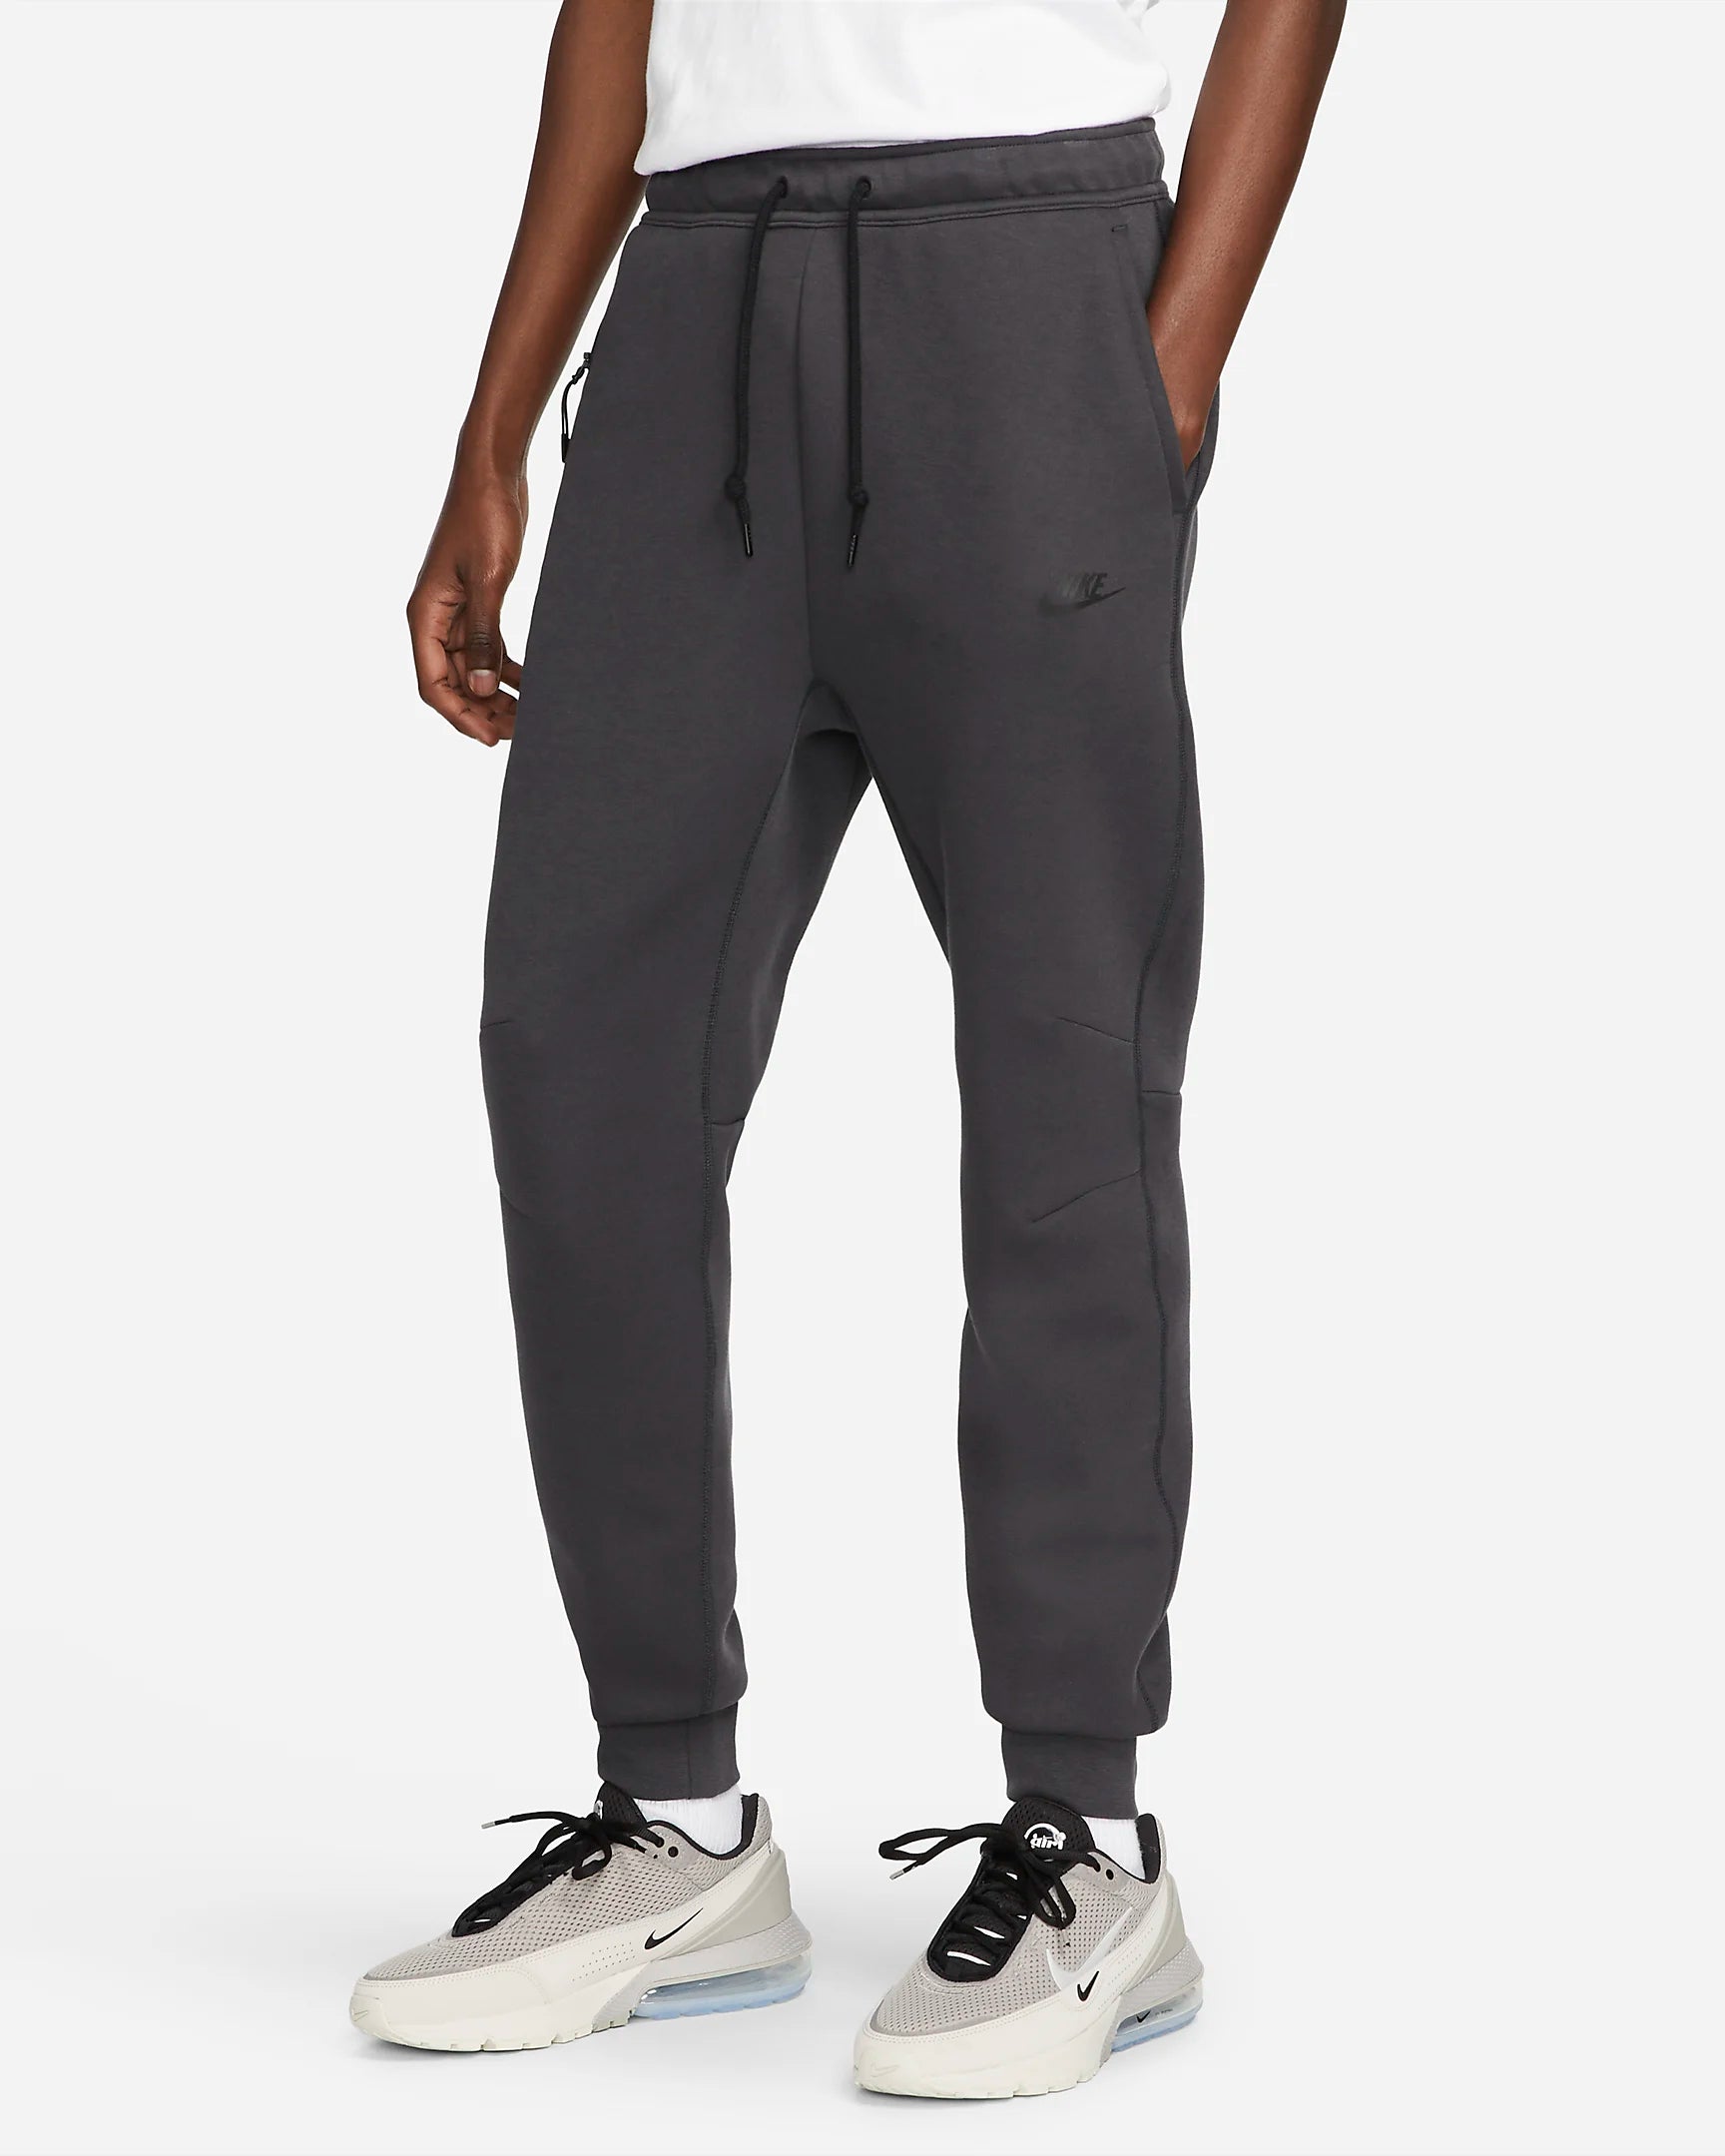 Pantaloni Nike Tech Fleece - Nero/Grigio Antracite